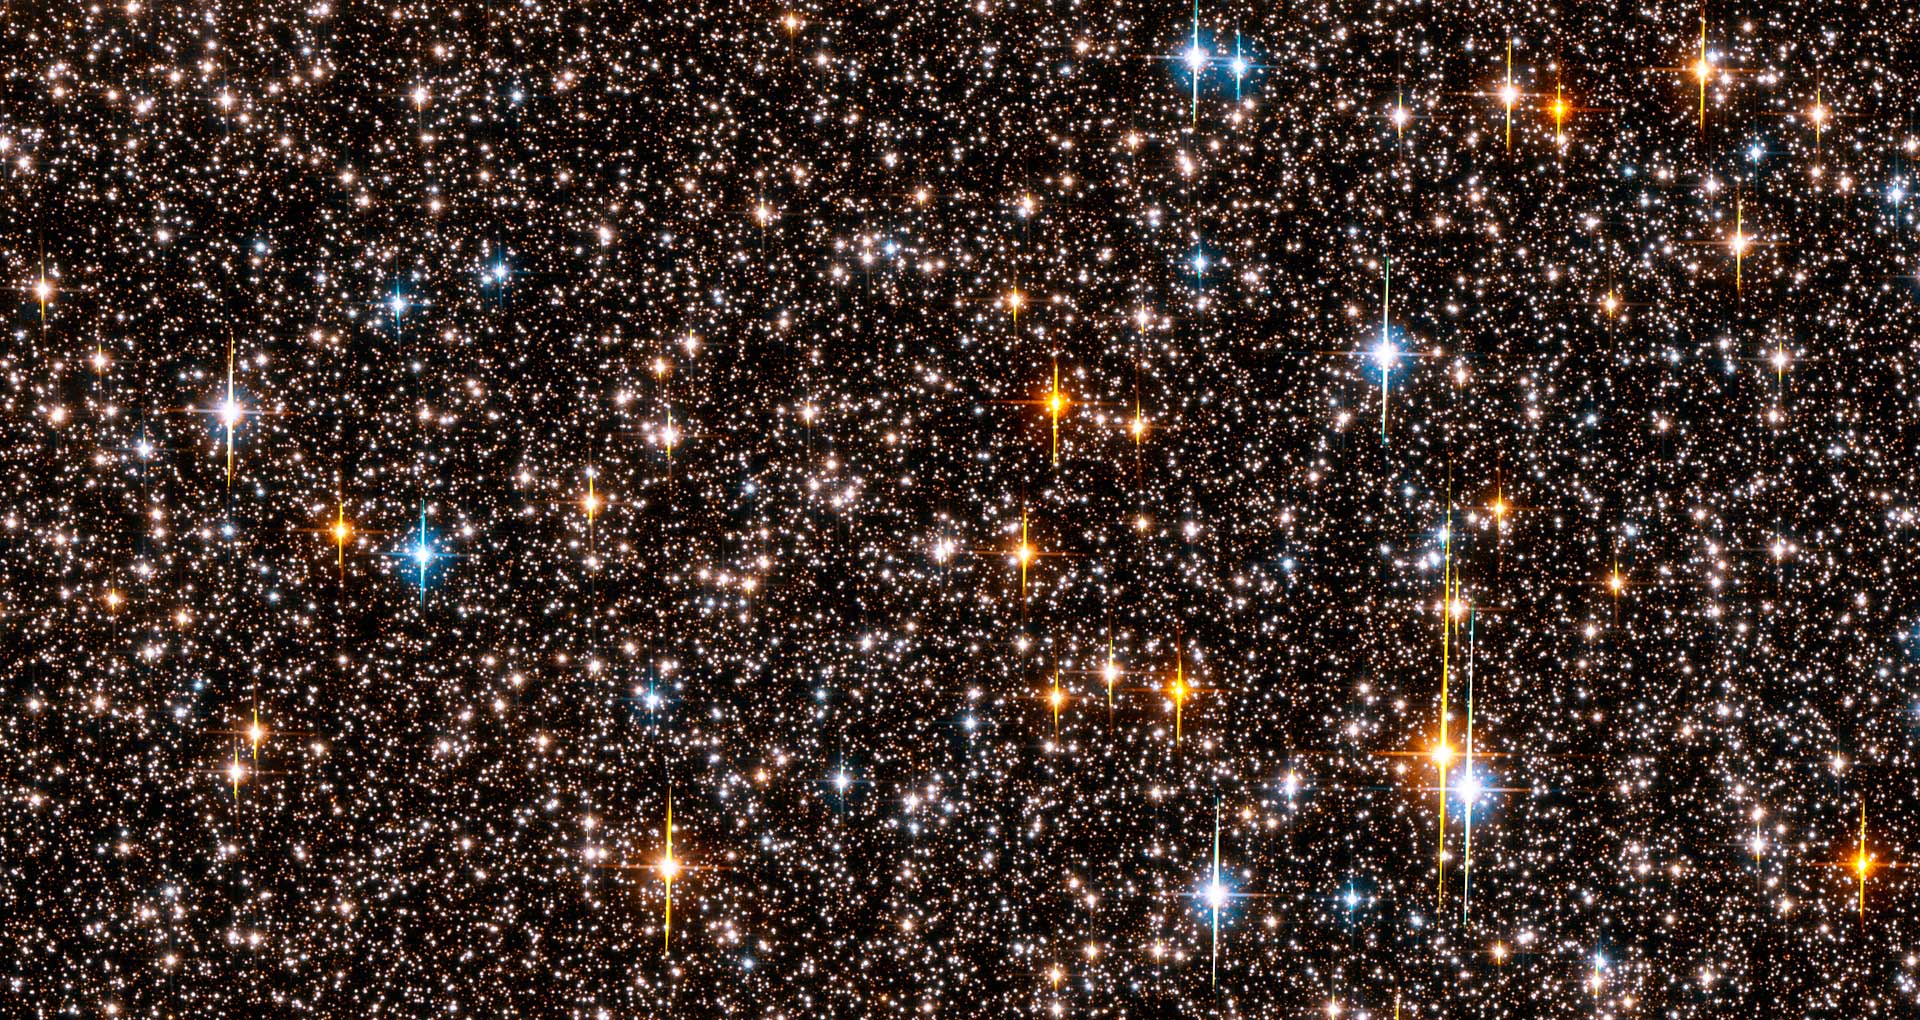 Hubble view of Sagittarius